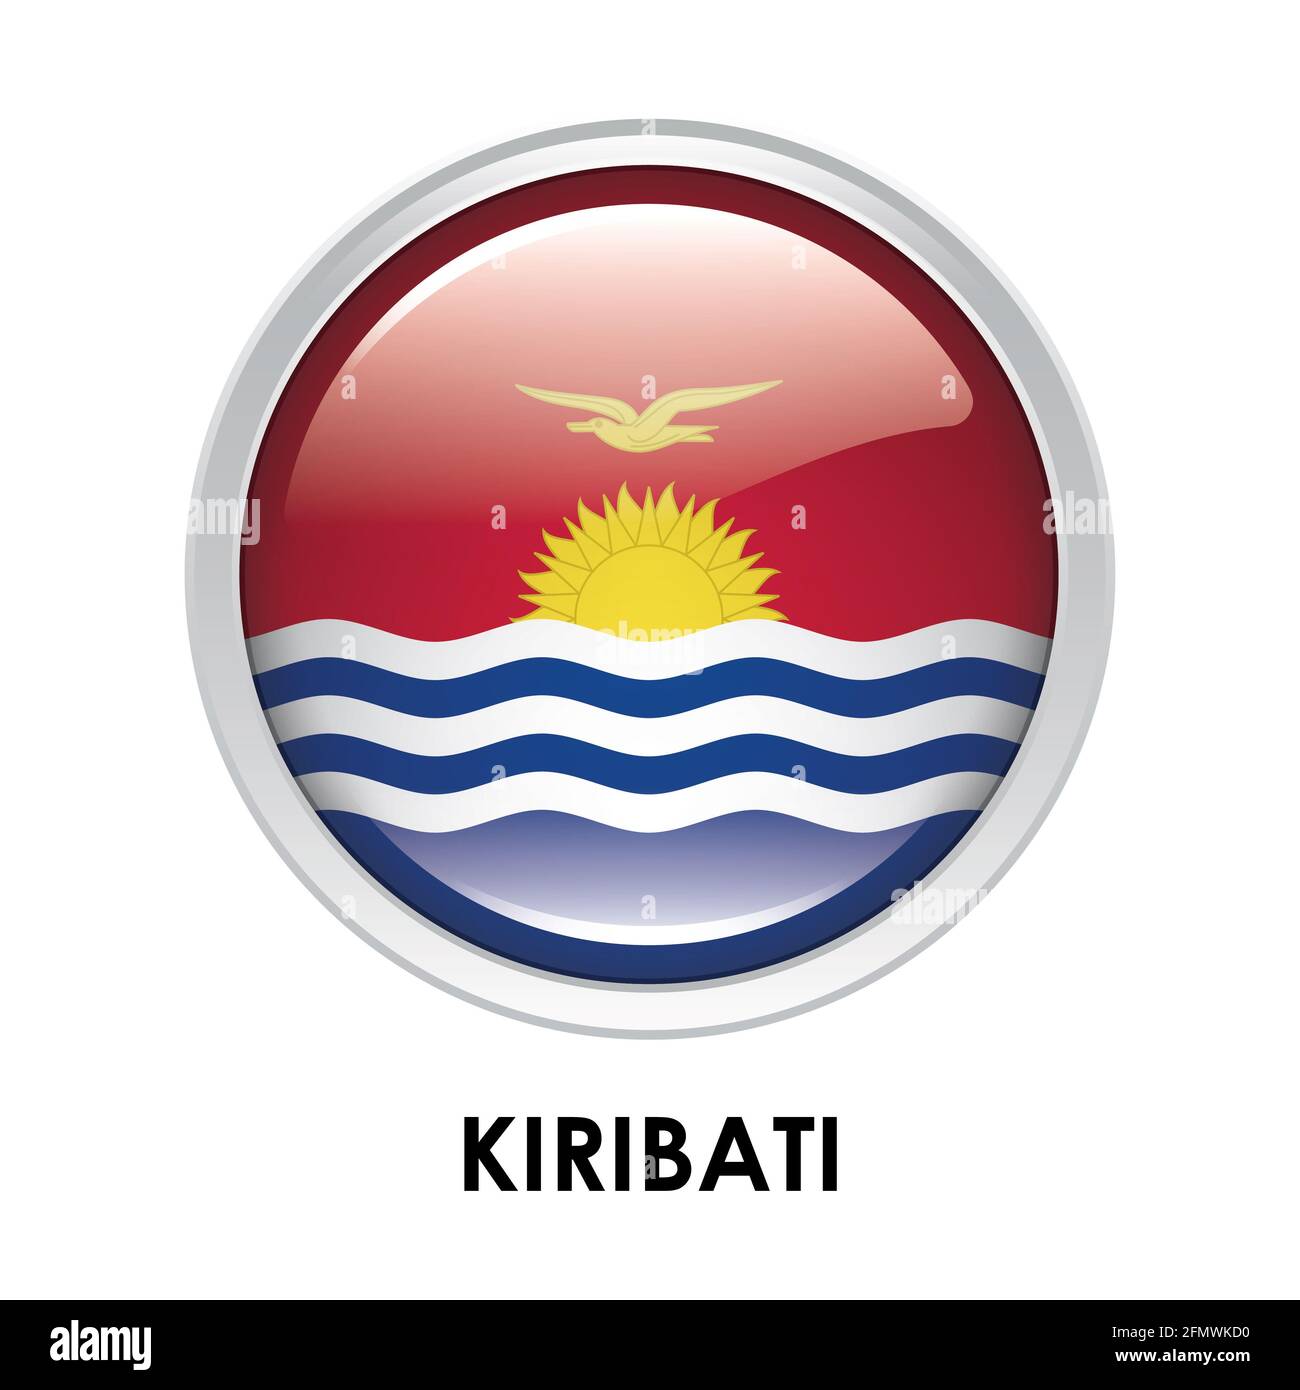 Round flag of Kiribati Stock Photo